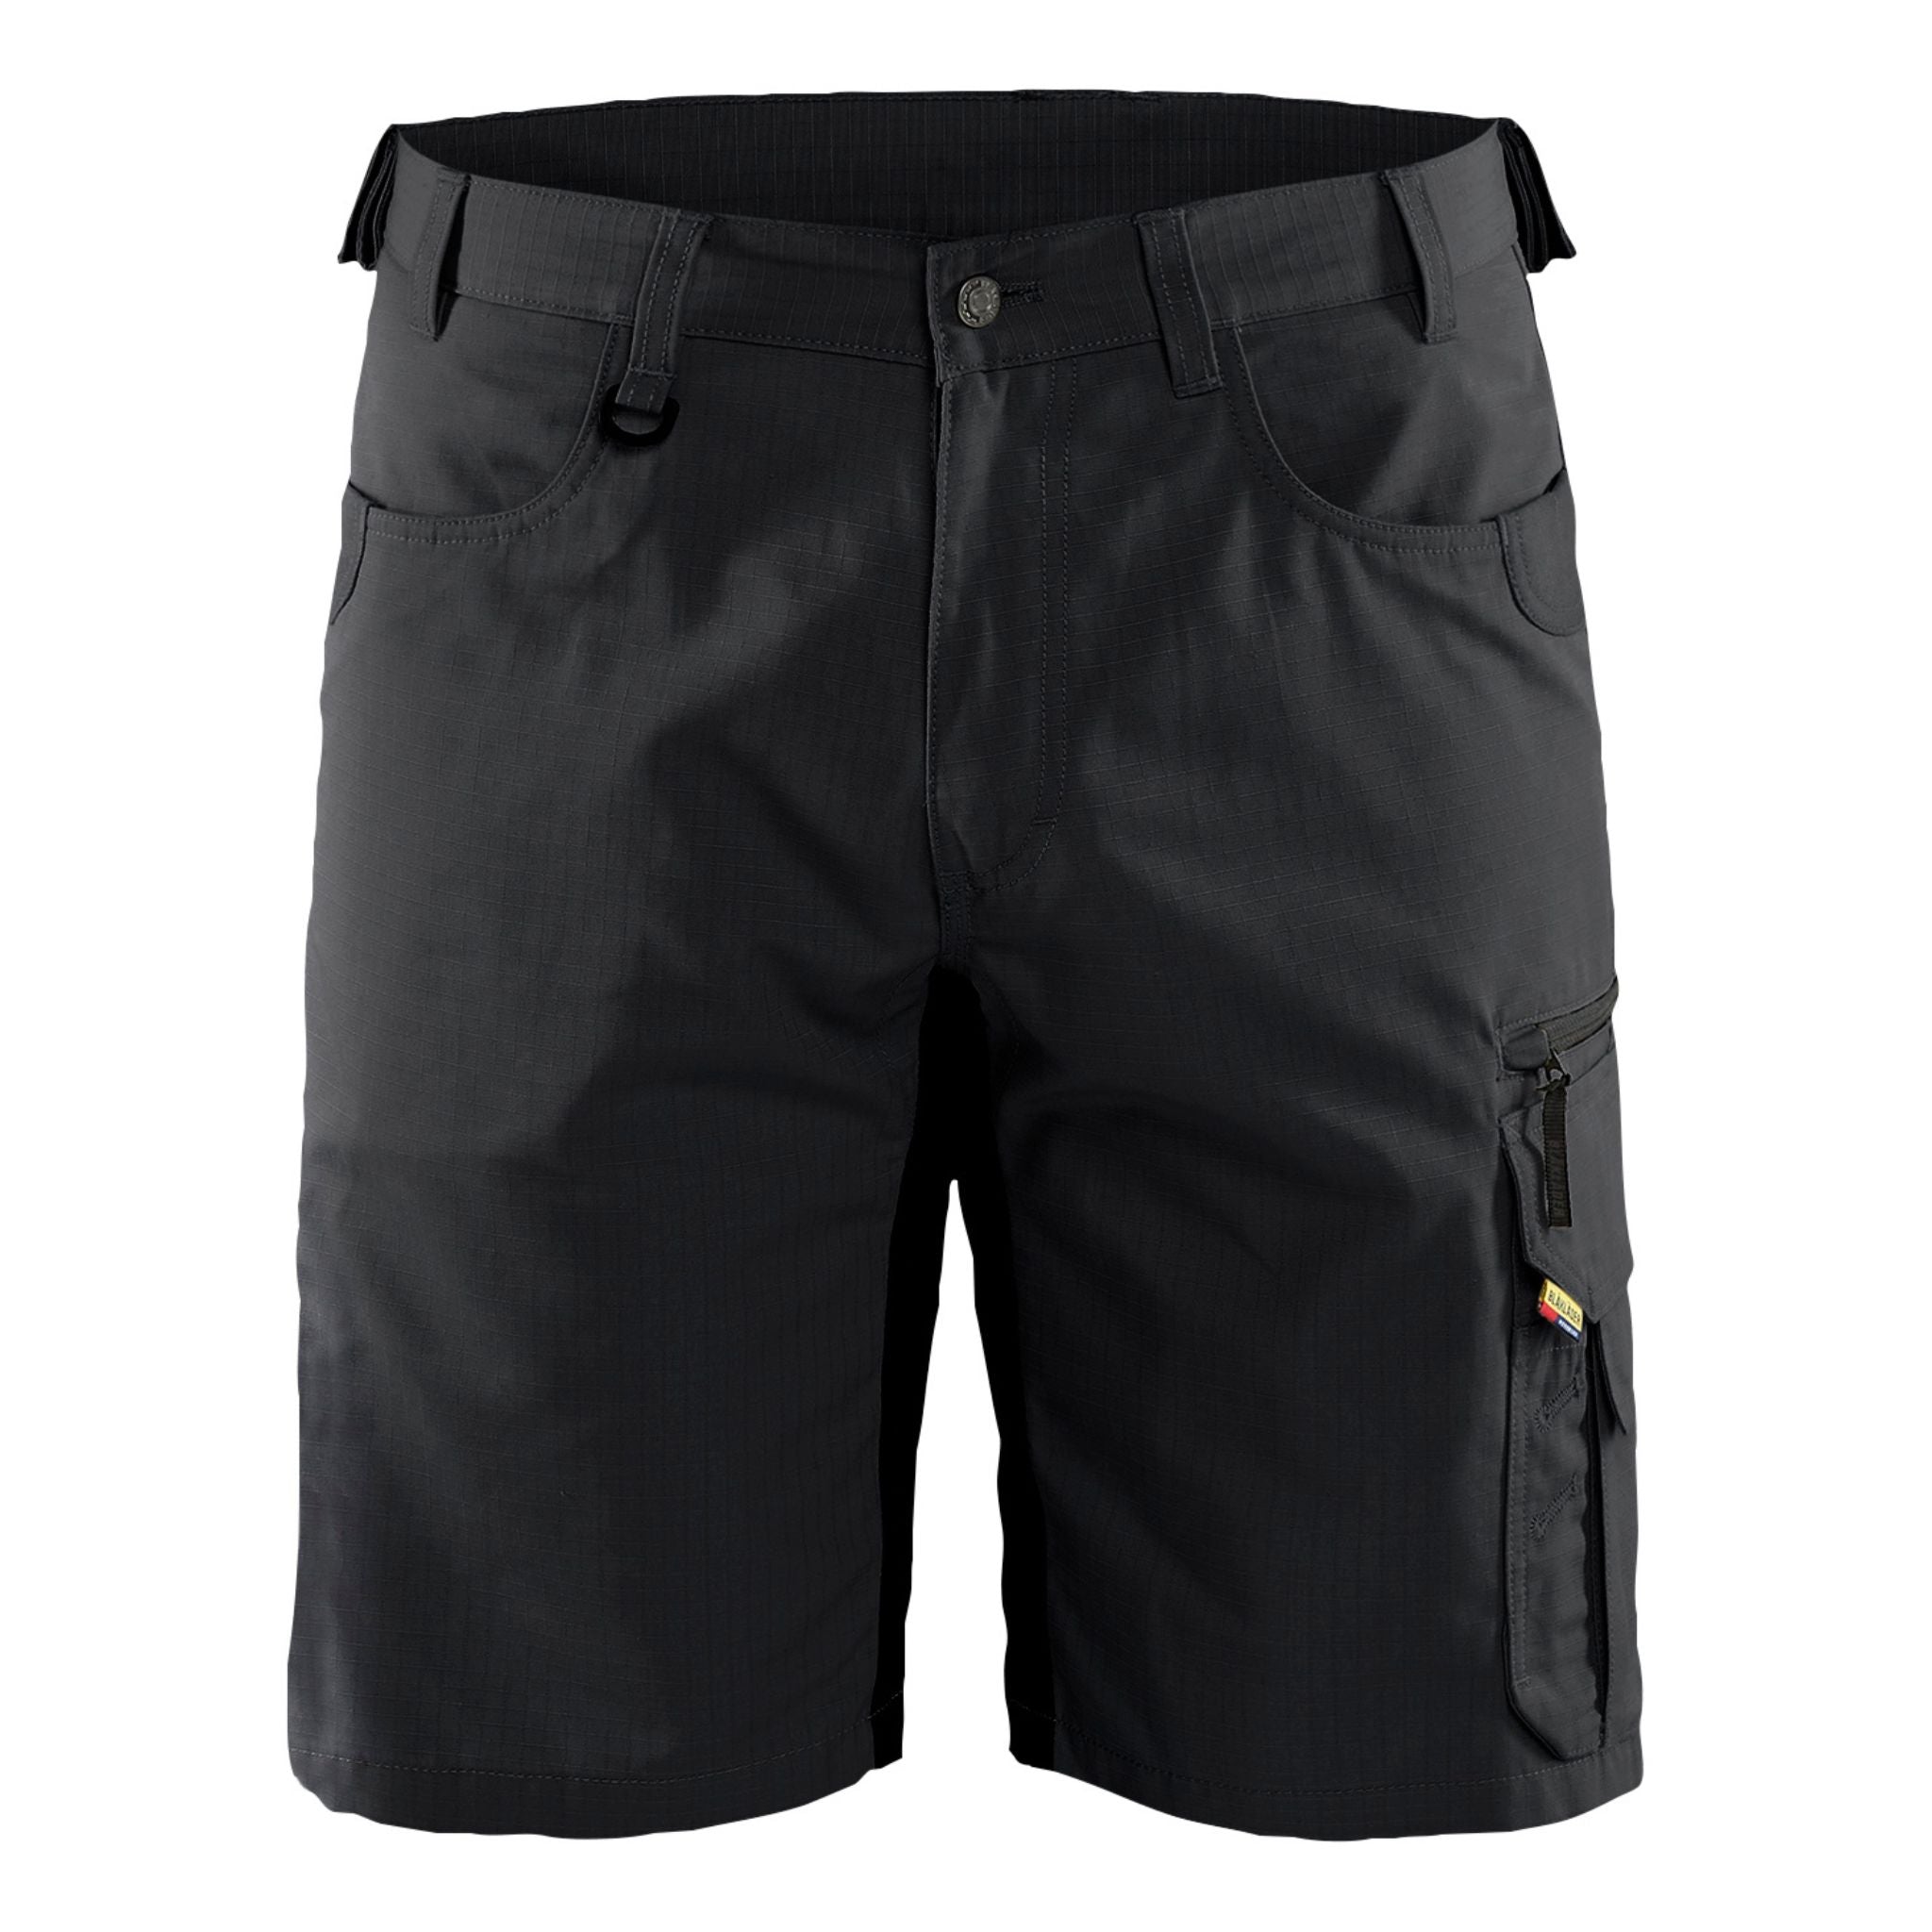 Men's black eleven pocket ripstop work shorts